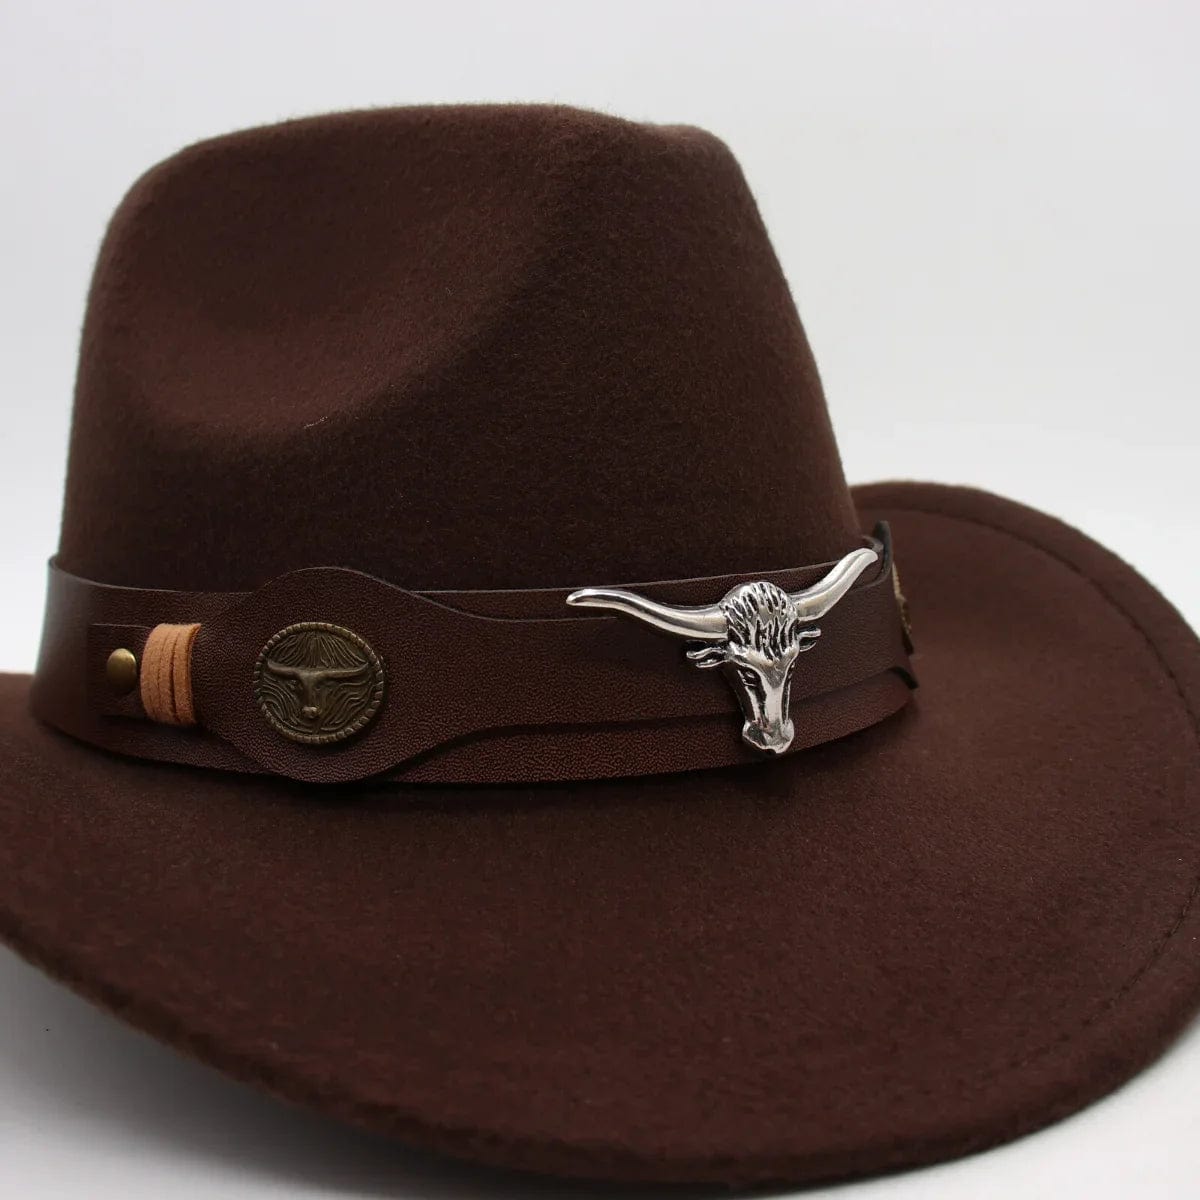 wickedafstore Western Style Cowboy Hat